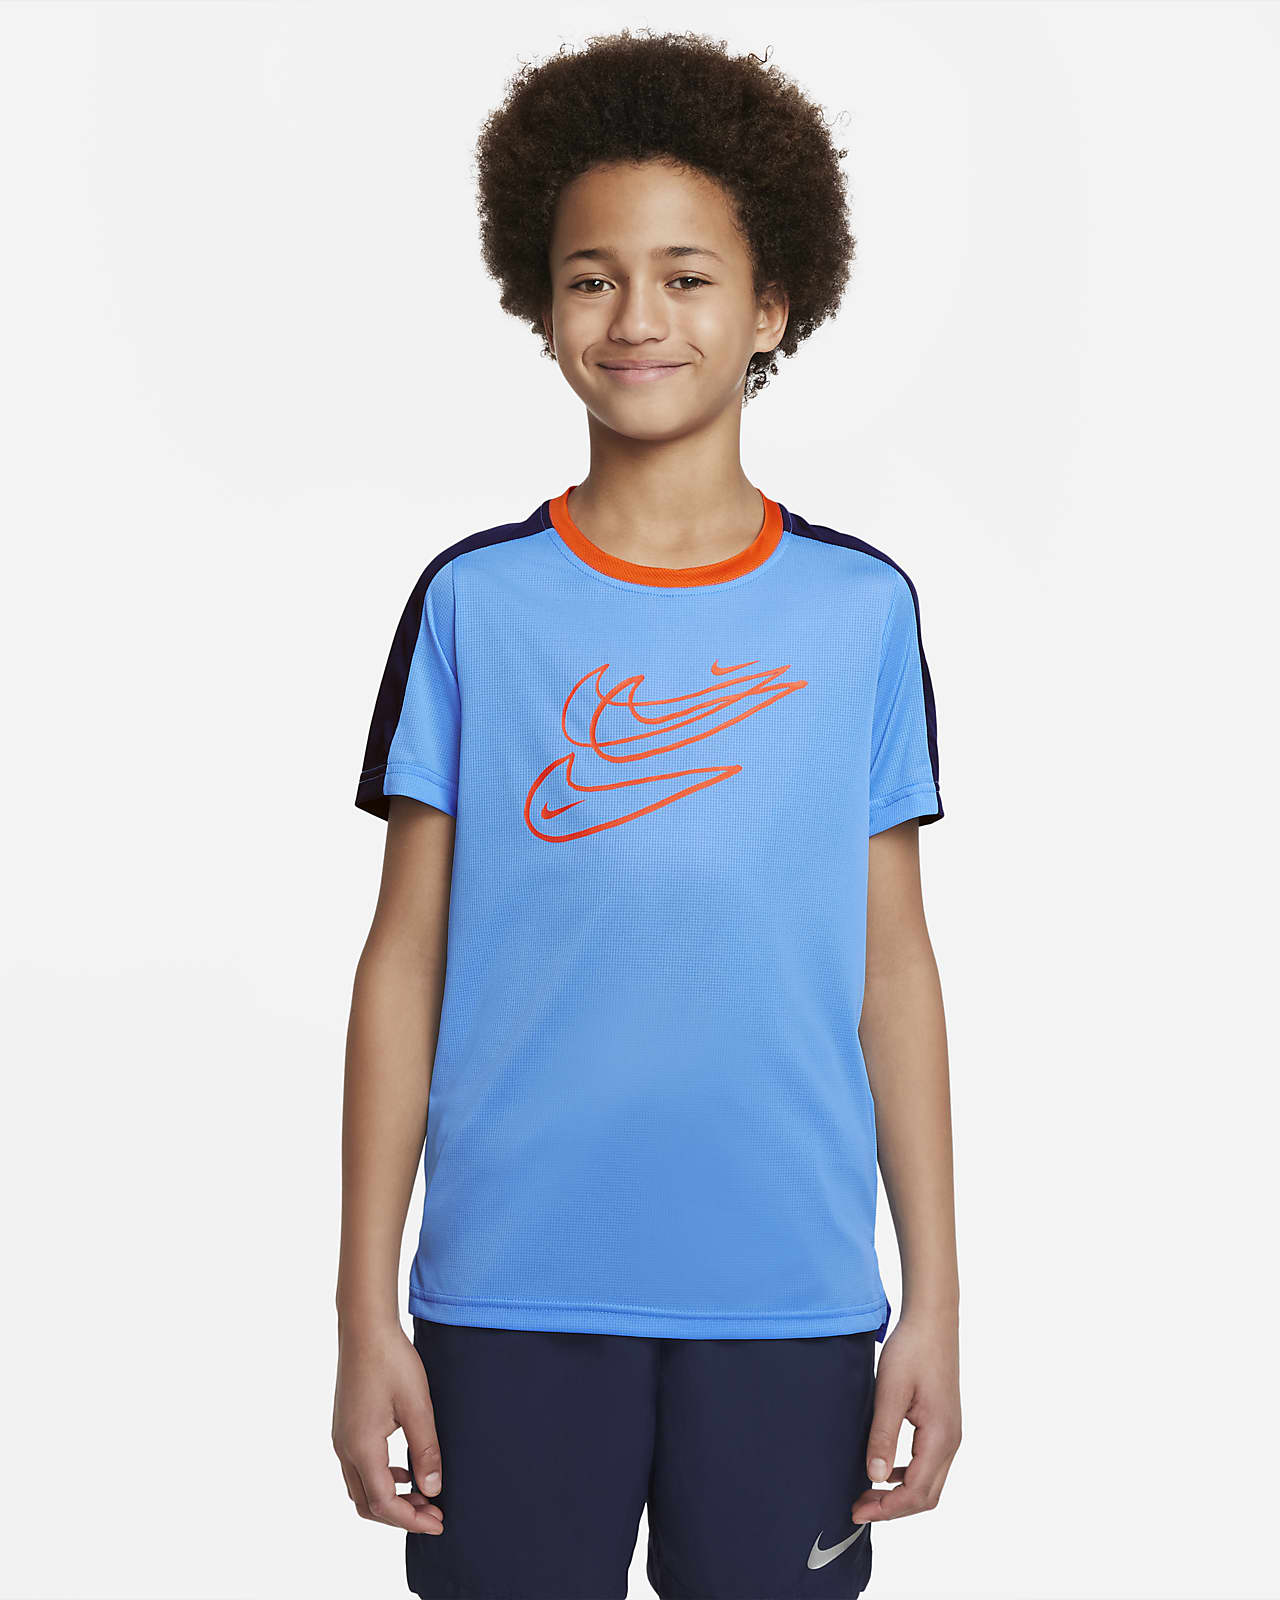 Träningströja Nike Dri-FIT för ungdom (killar)